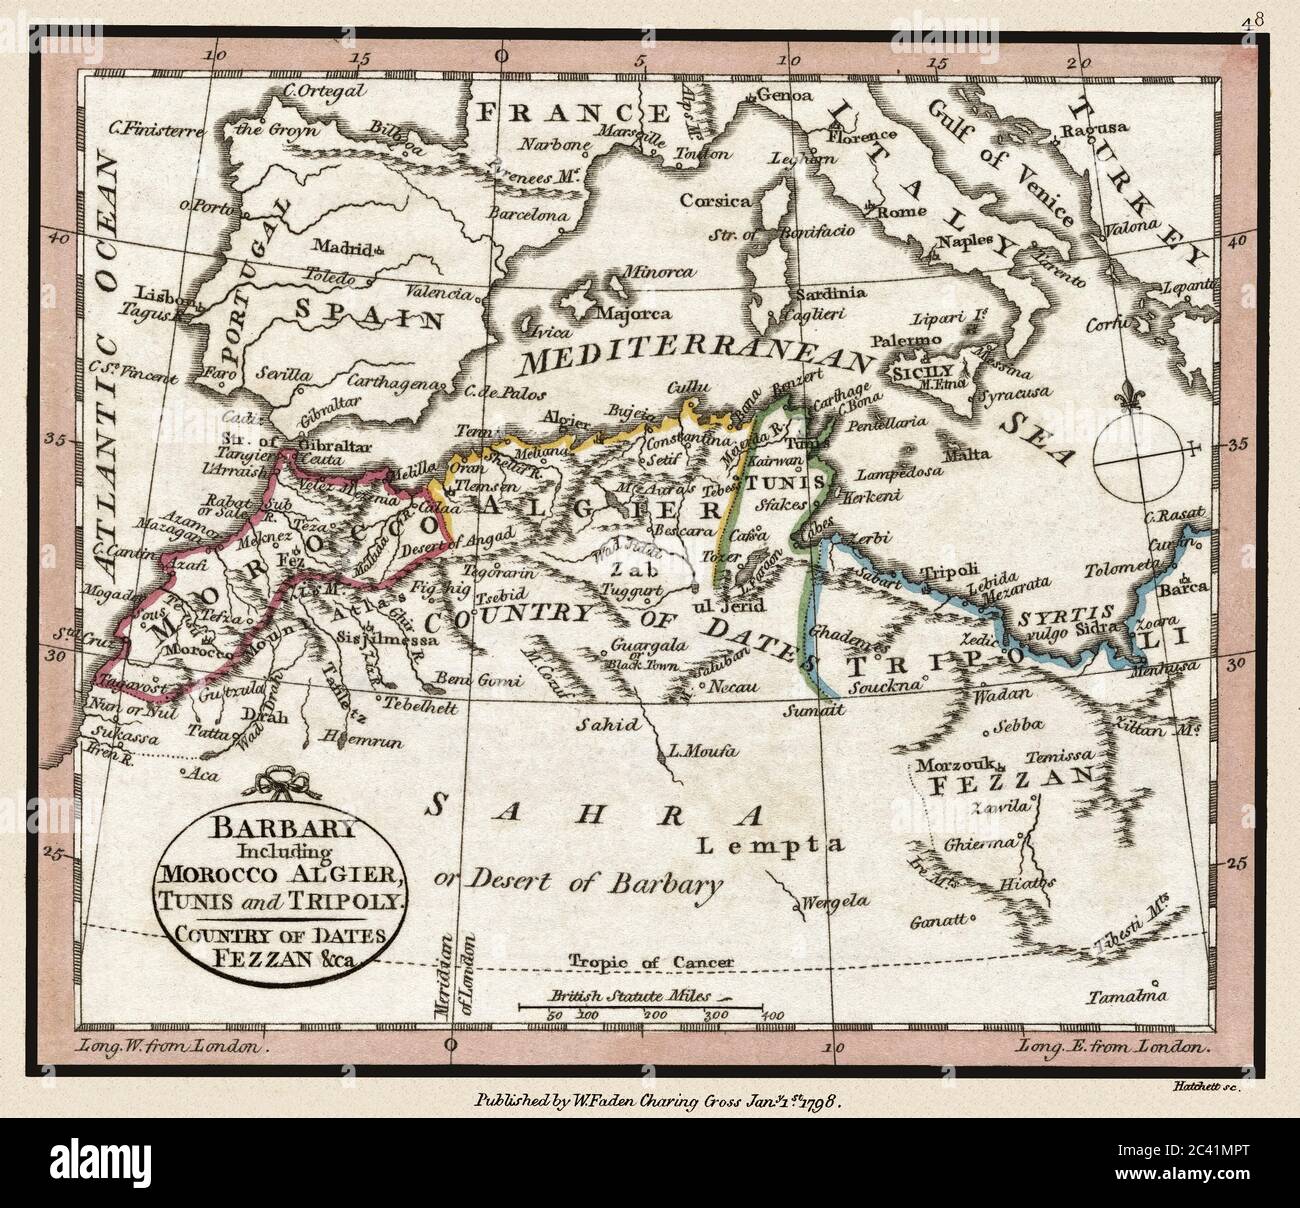 "Barbary einschließlich Marokko Algier, Tunis und Tripoly." Dies ist eine wunderschön detaillierte historische Atlaskarte, die um 1804 veröffentlicht wurde. Stockfoto